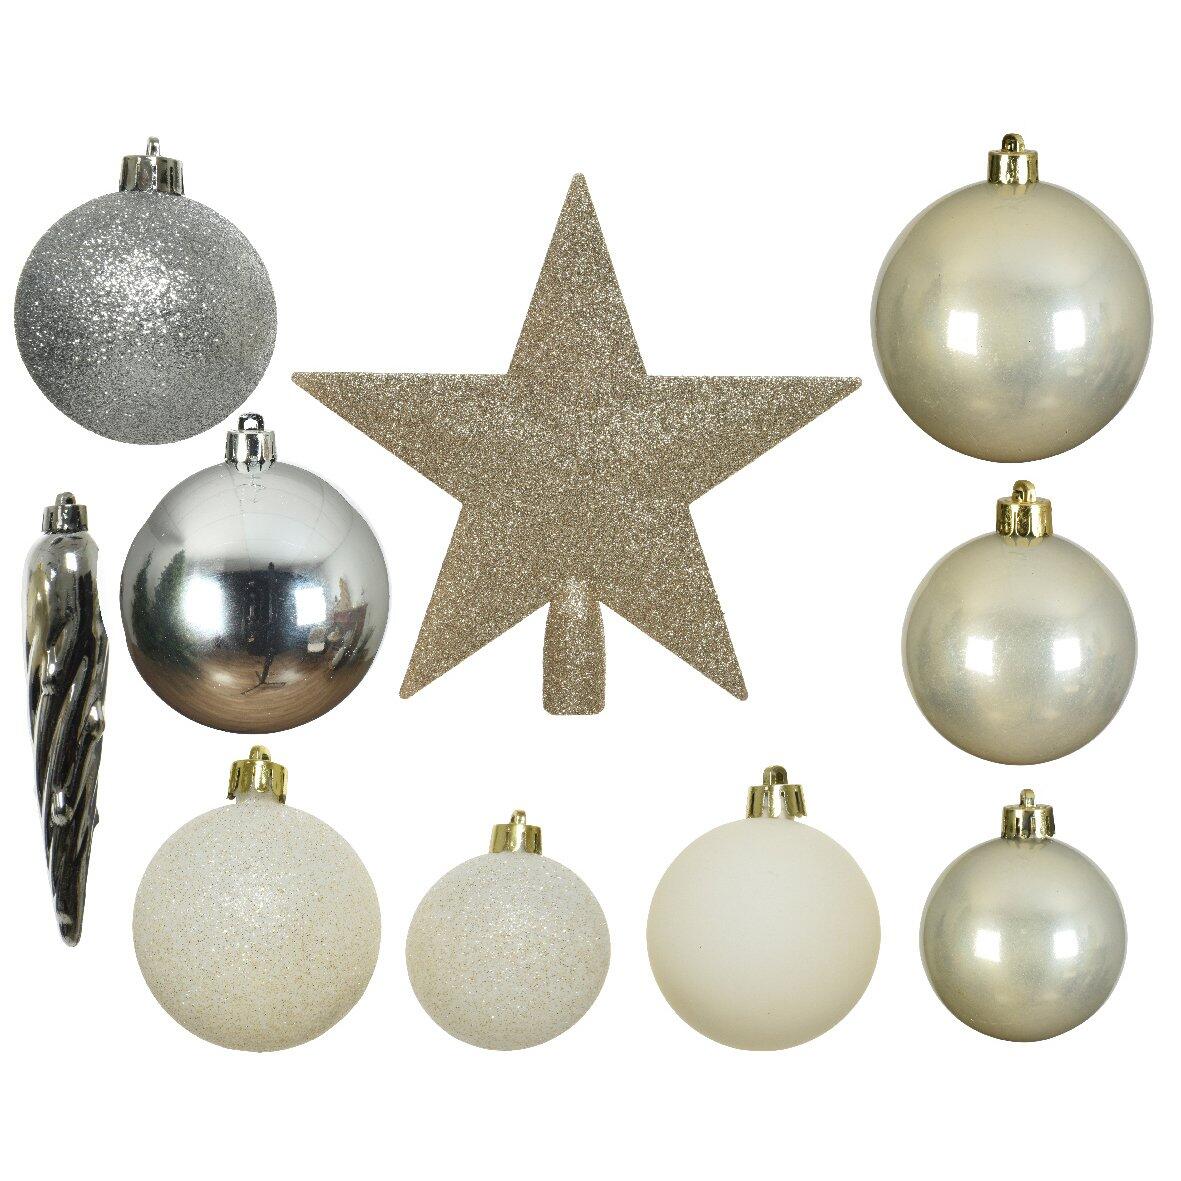 Kit de décoration de sapin de Noël Novae multi Argent / Blanc laine / Or /  Perle 1